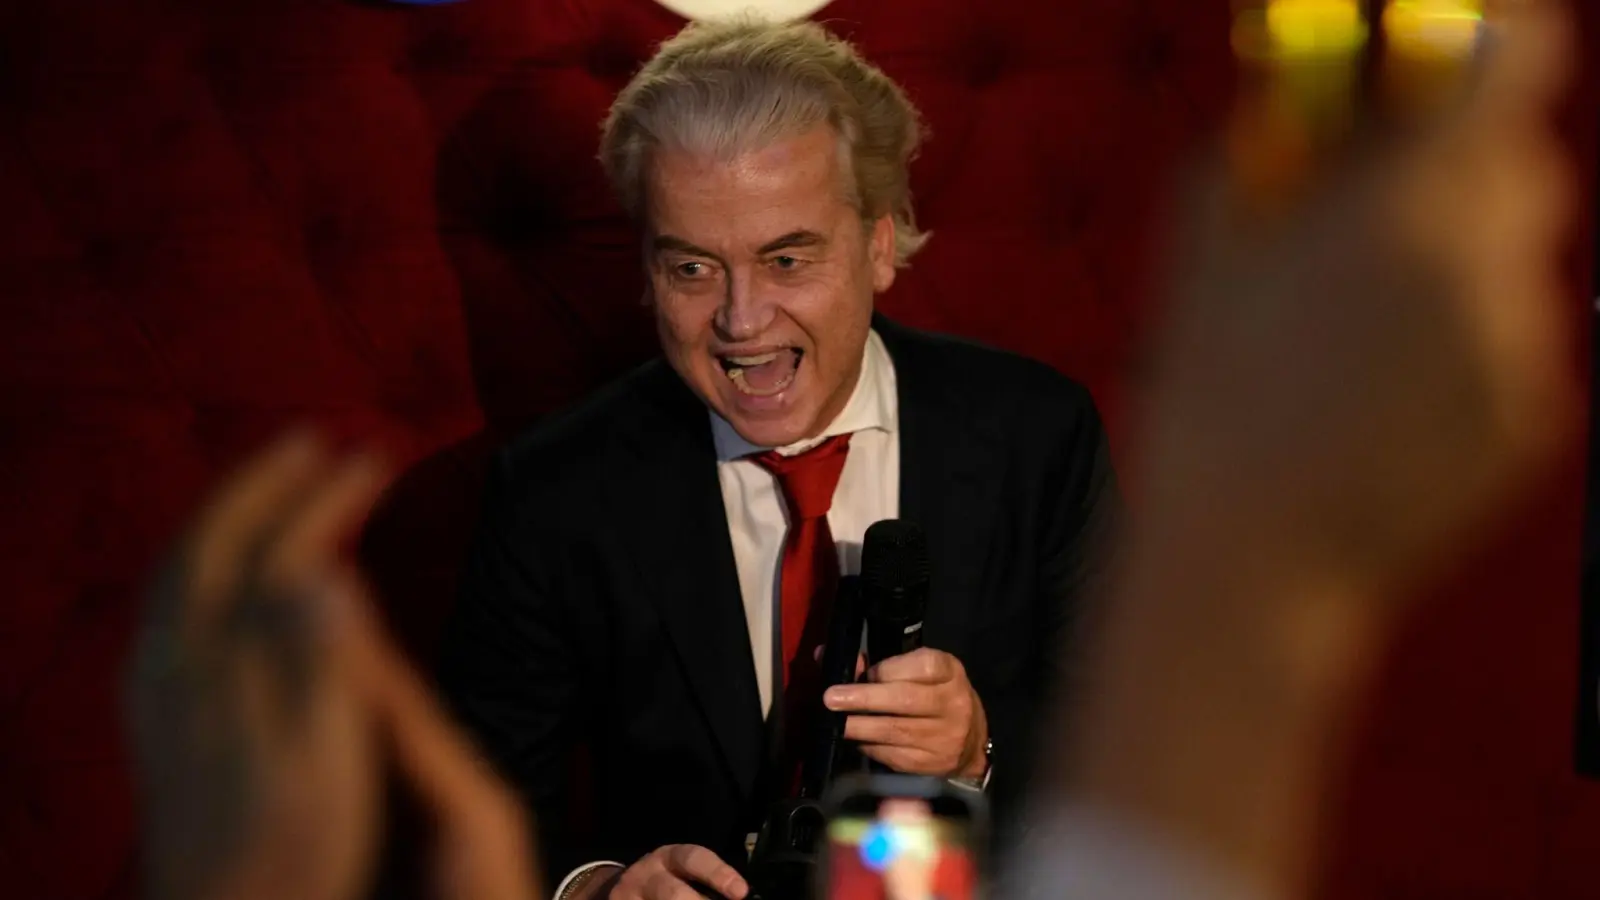 PVV-Chef Geert Wilders wird nach Bekanntgabe der Wahlprognose in Den Haag von Anhängern gefeiert. (Foto: Peter Dejong/AP/dpa)